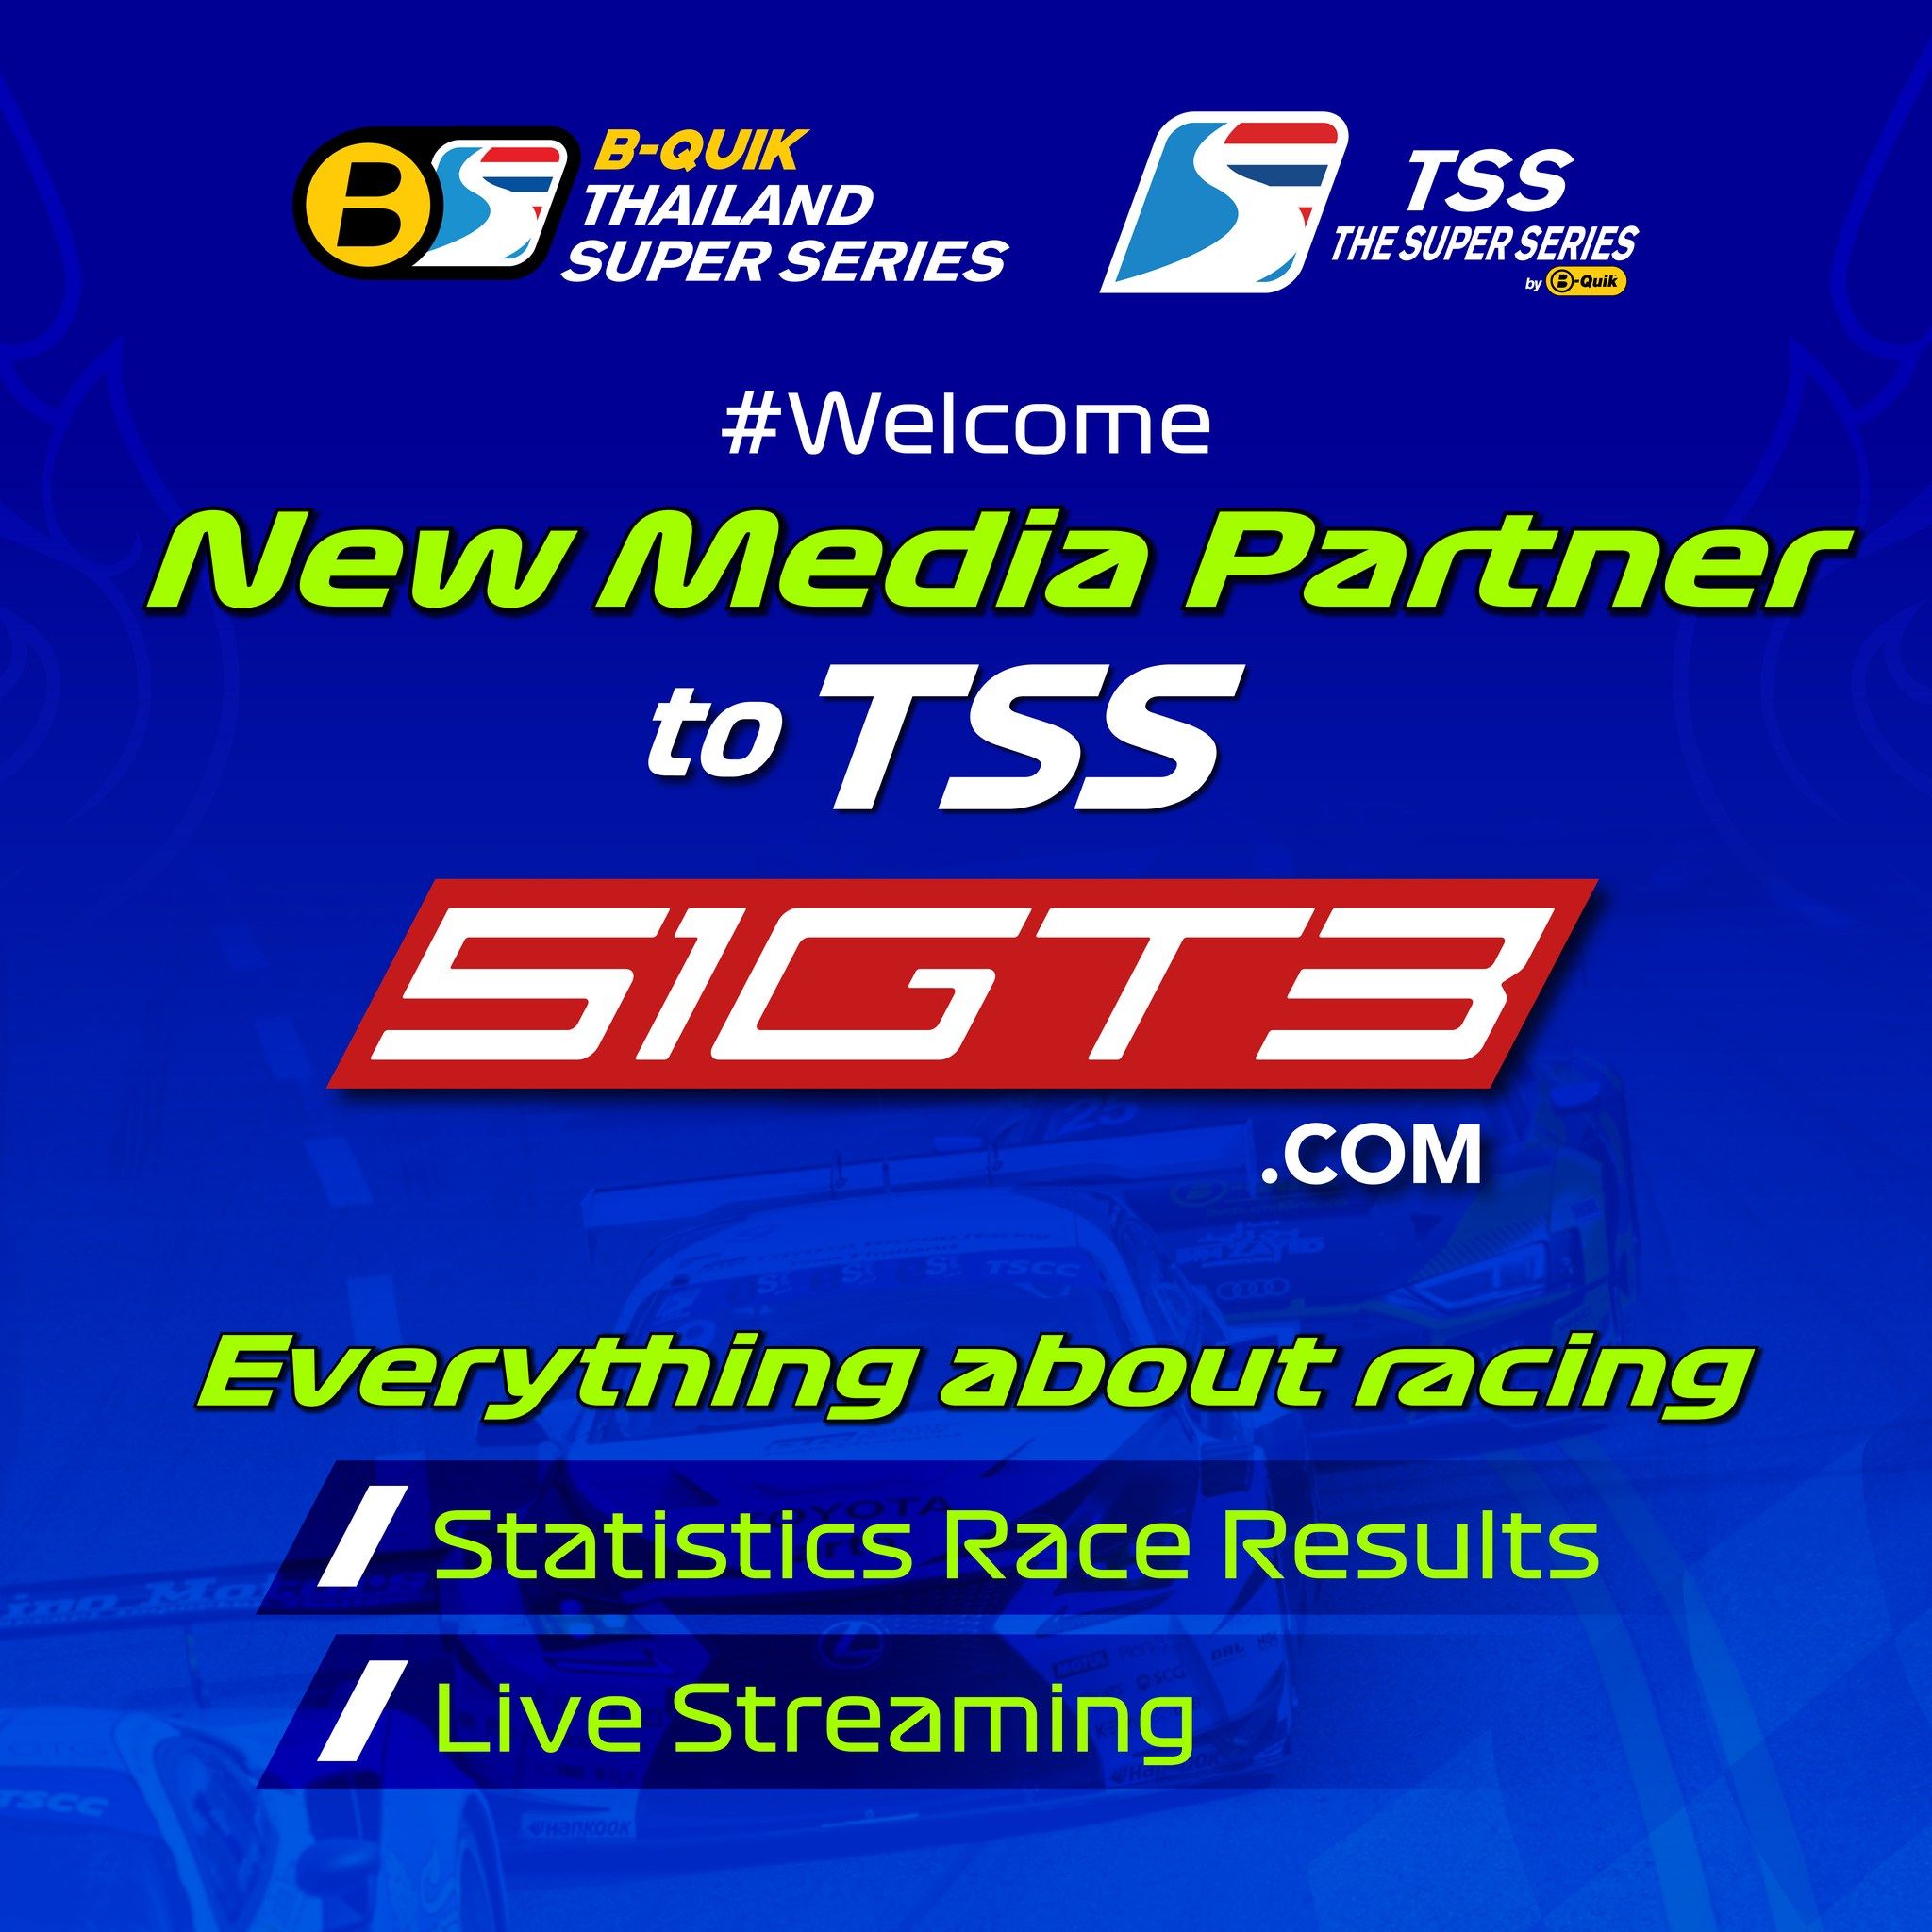 مرحبًا بك كشريك إعلامي جديد في TSS - 51GT3.com